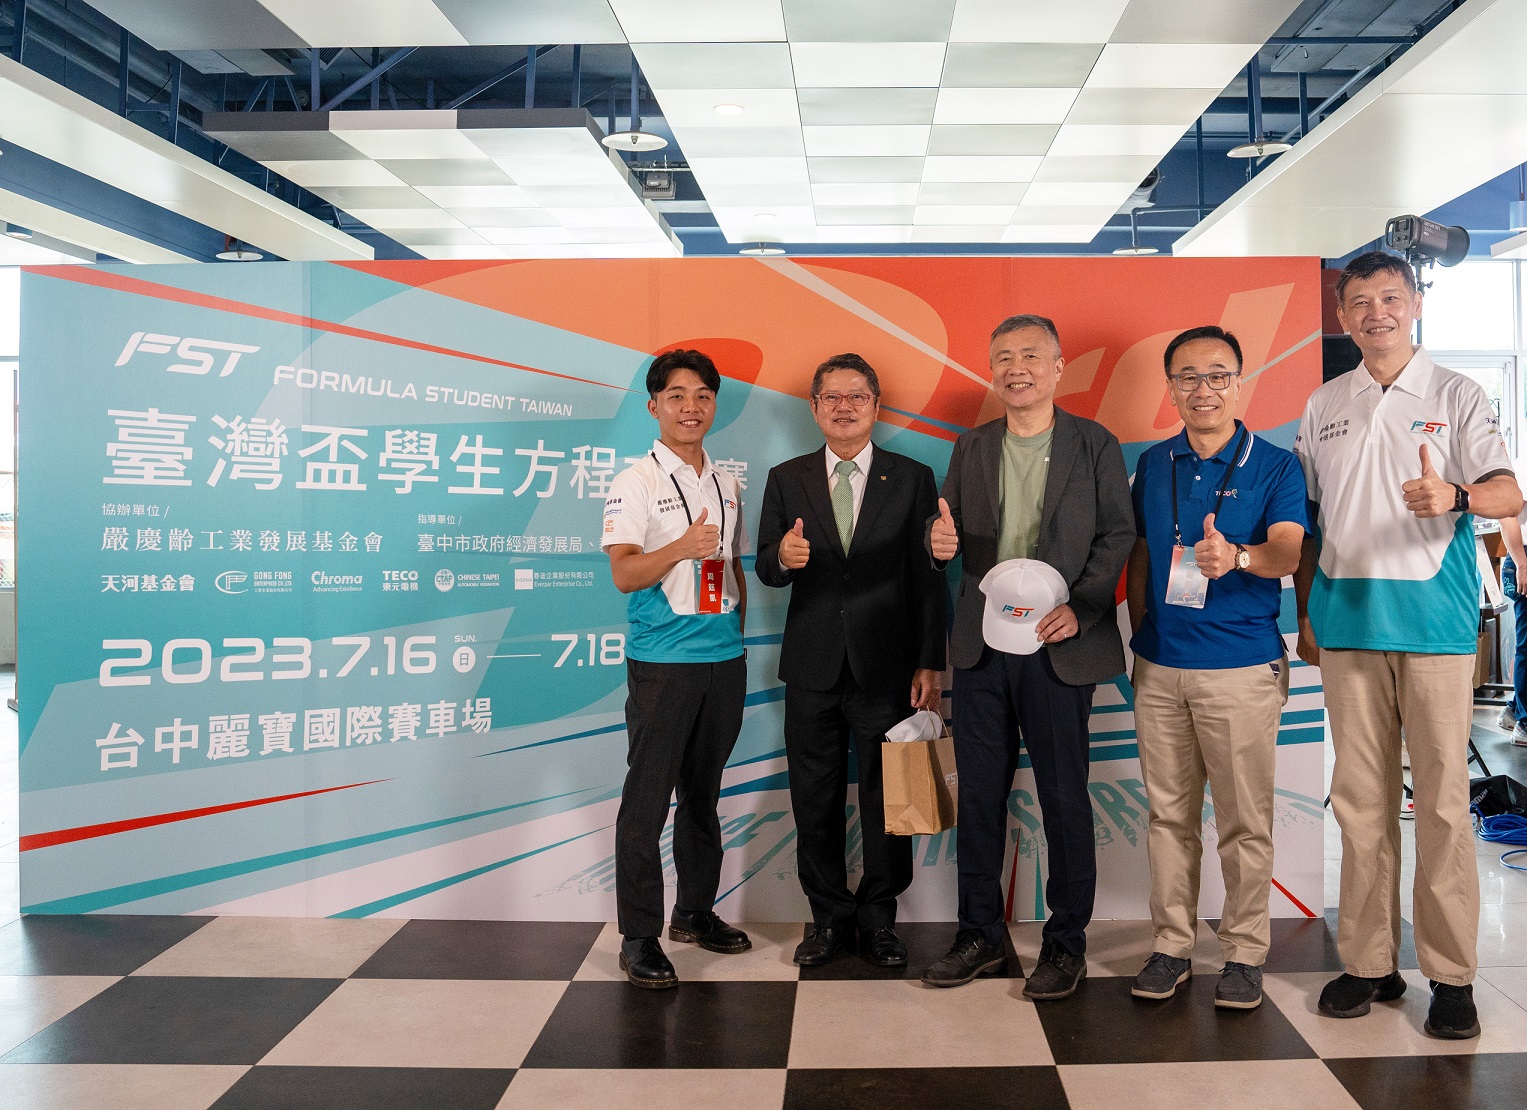 东元电机连续两年 赞助FST台湾杯学生方程式